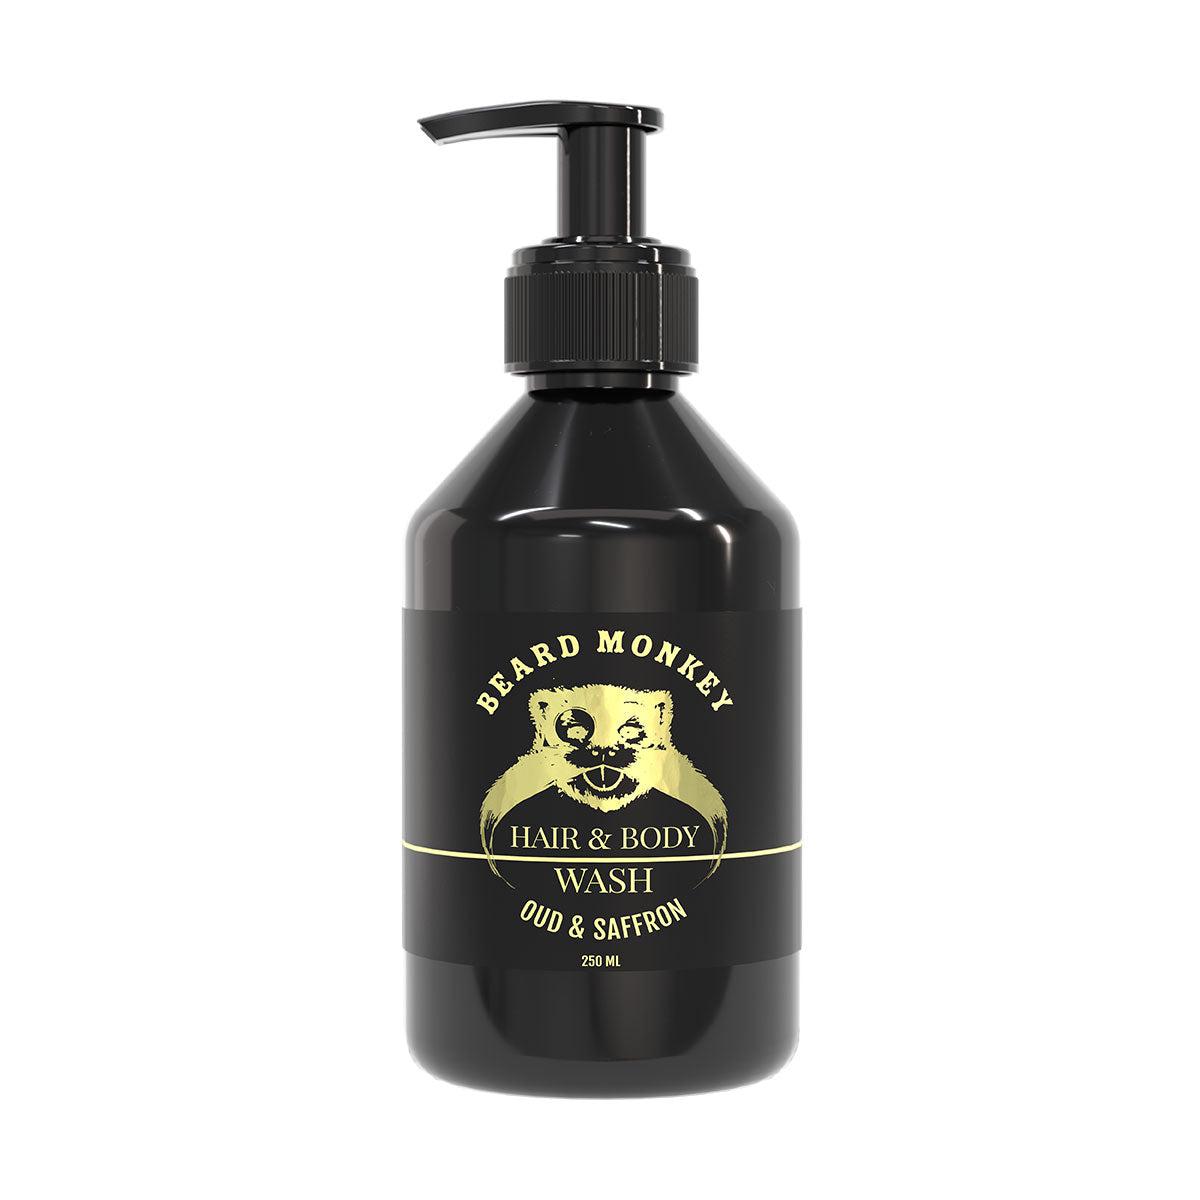 Beard Monkey Oud & Saffran Hair & Body Wash 250ml